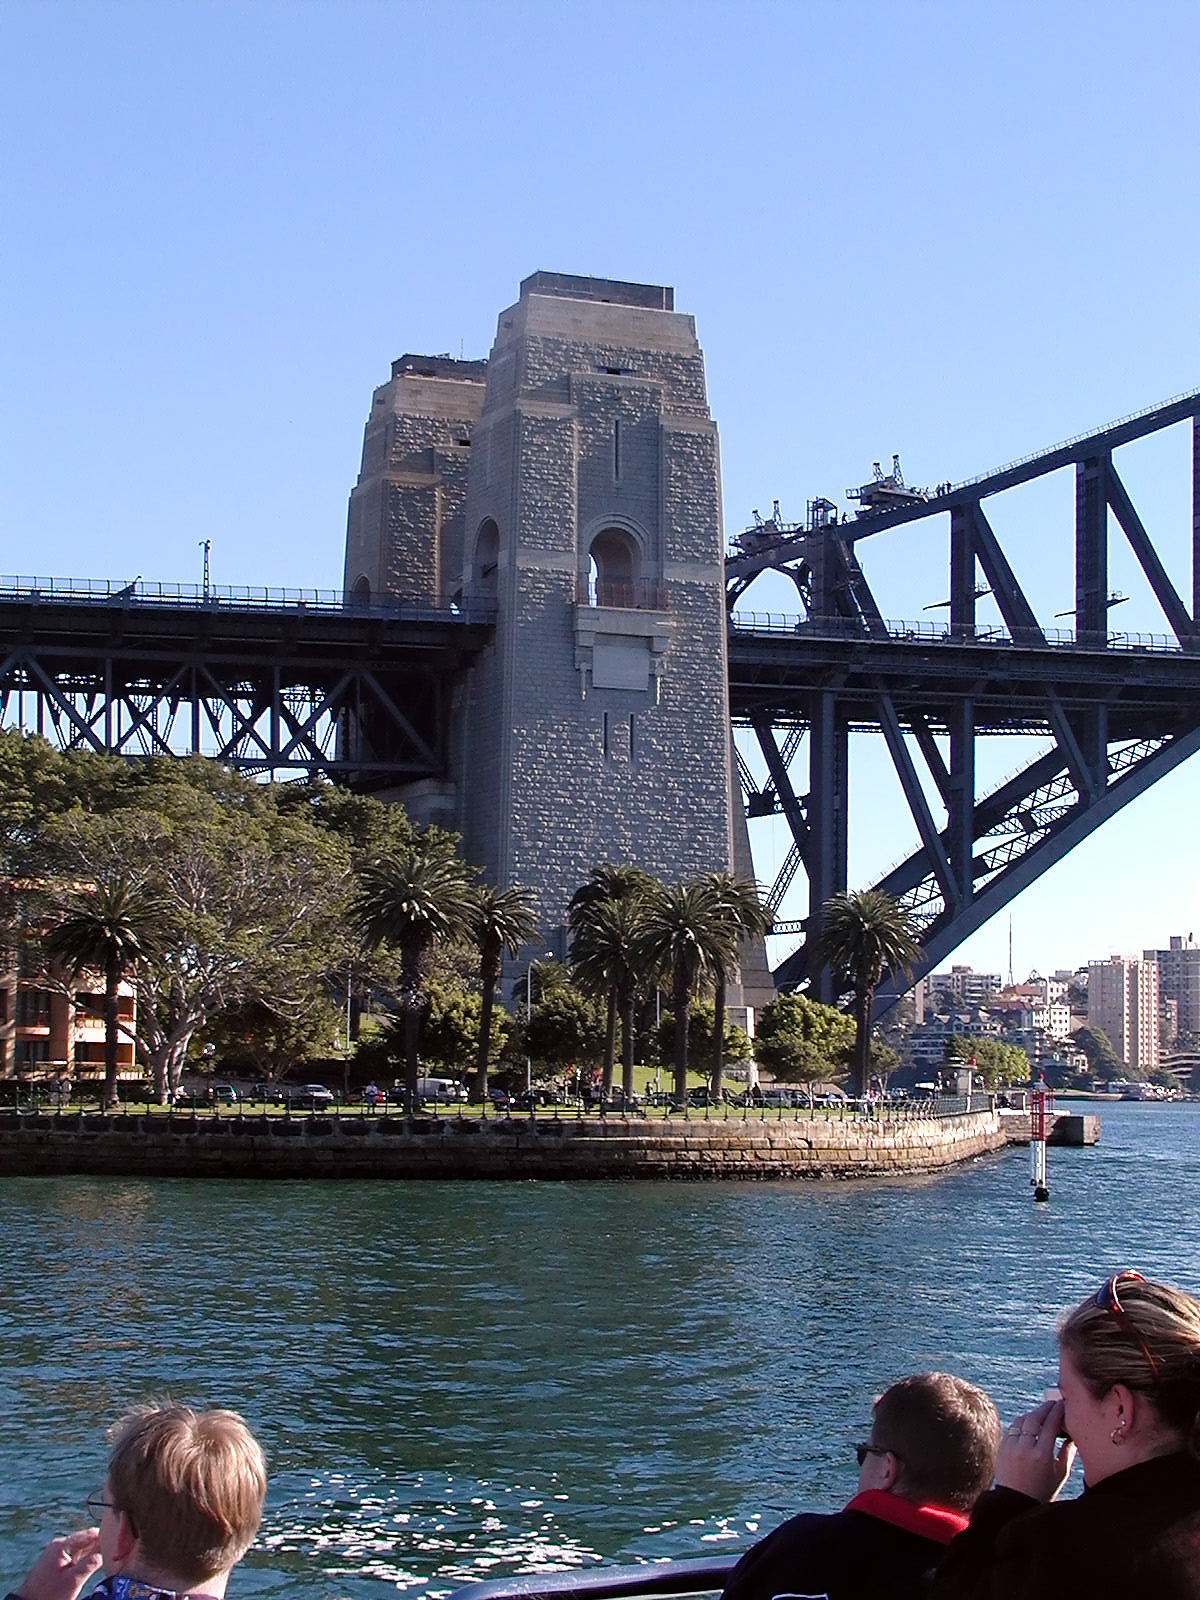 17-Jun-2001 10:07 - Sydney - The harbour bridge - South portal